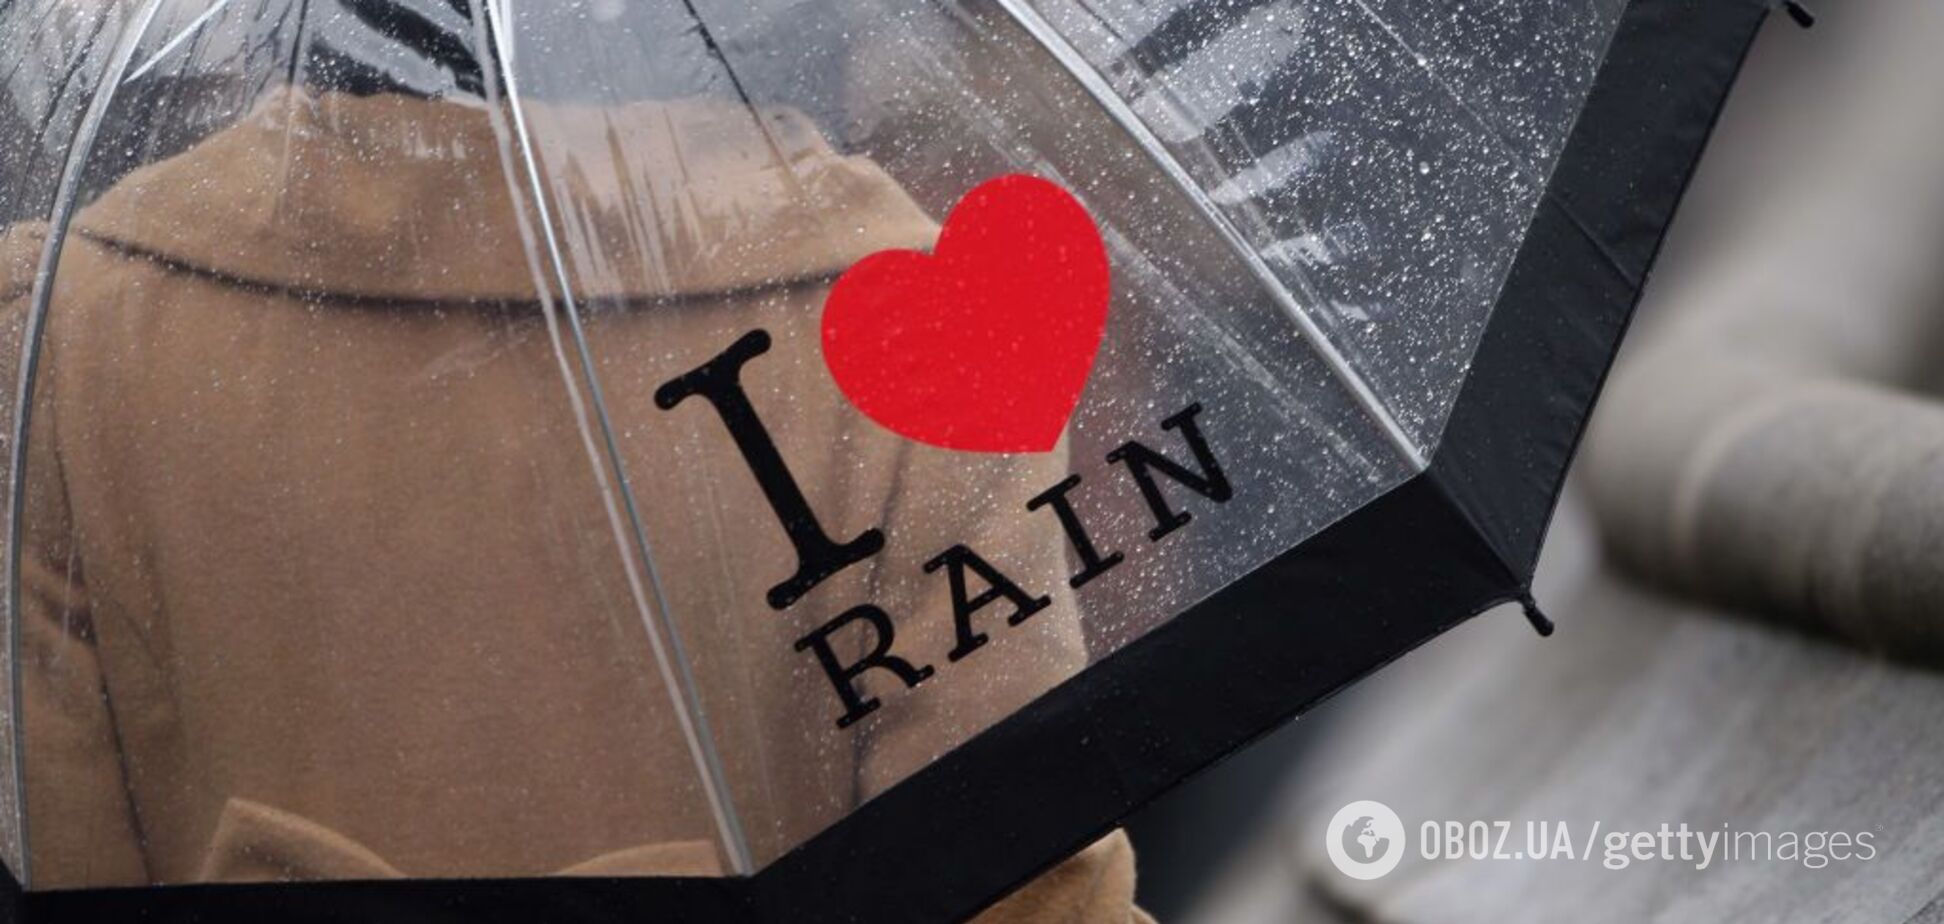 Зальет дождями! Украинцев предупредили об ухудшении погоды